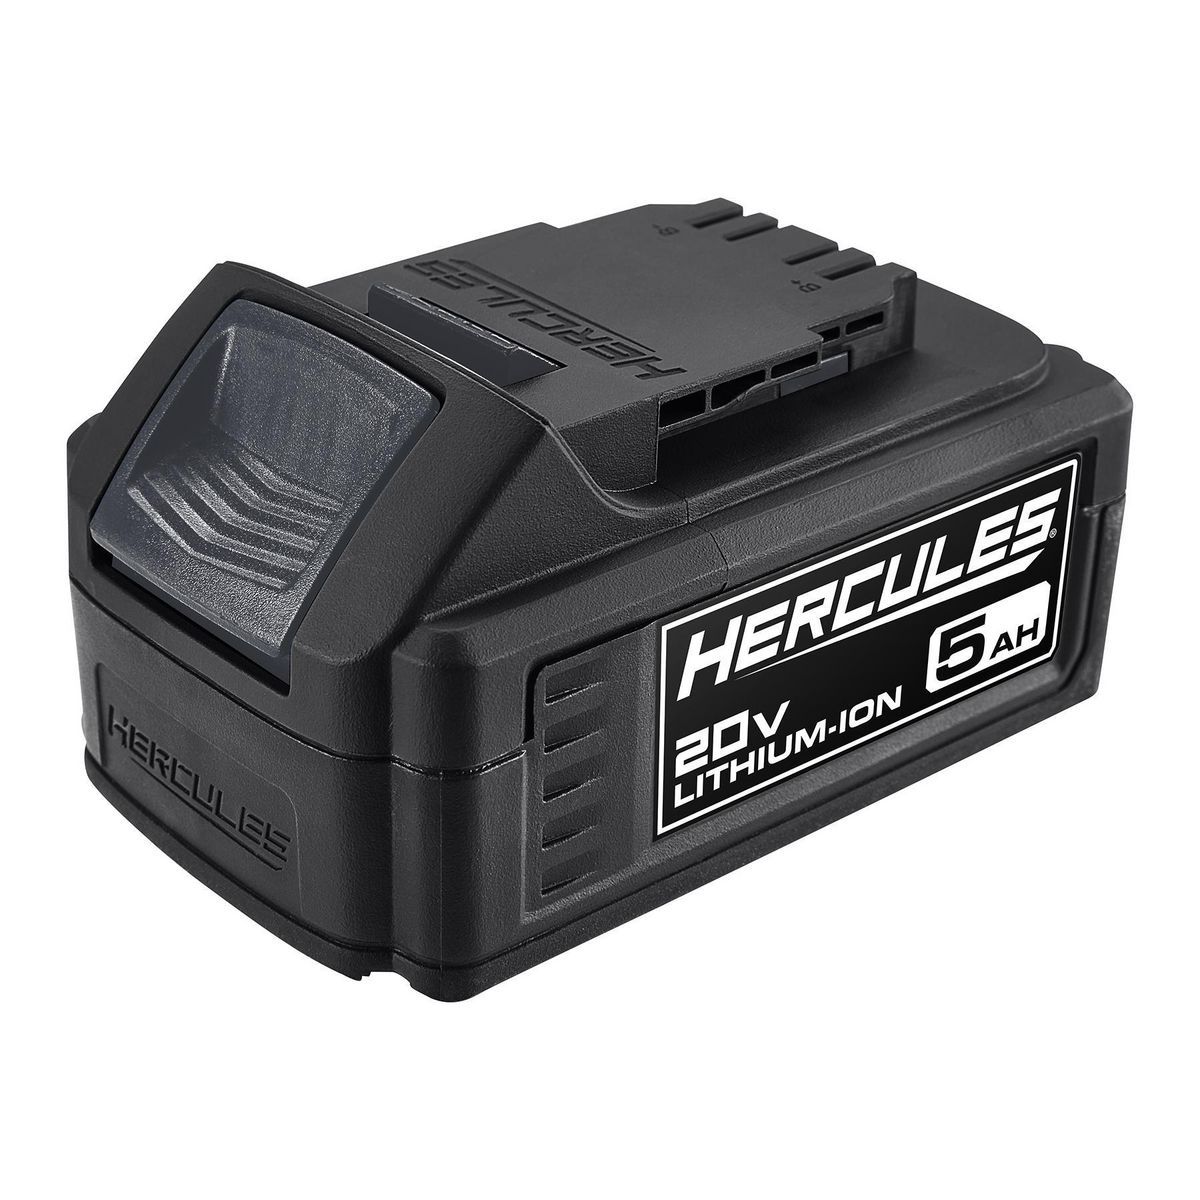 HERCULES 20V Max 5.0 Ah Hercules® XP Battery – Item 56560 – Harbor